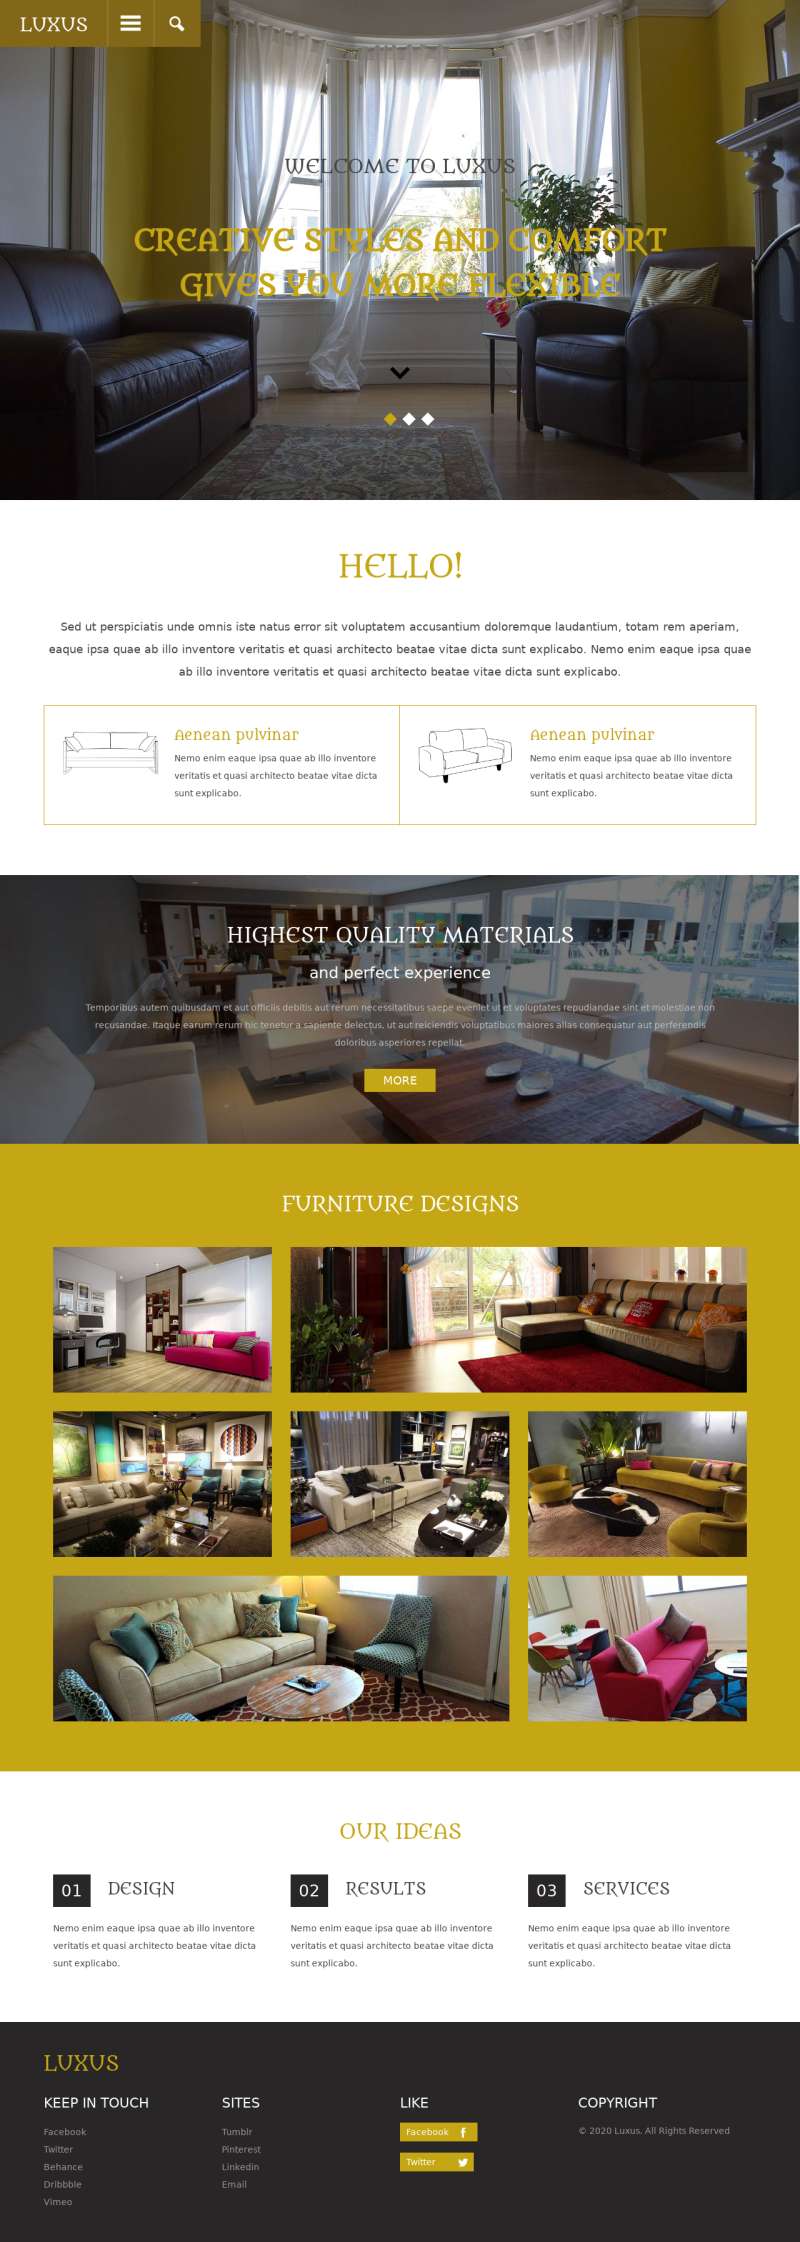 酒店室内装修设计网站模板html下载